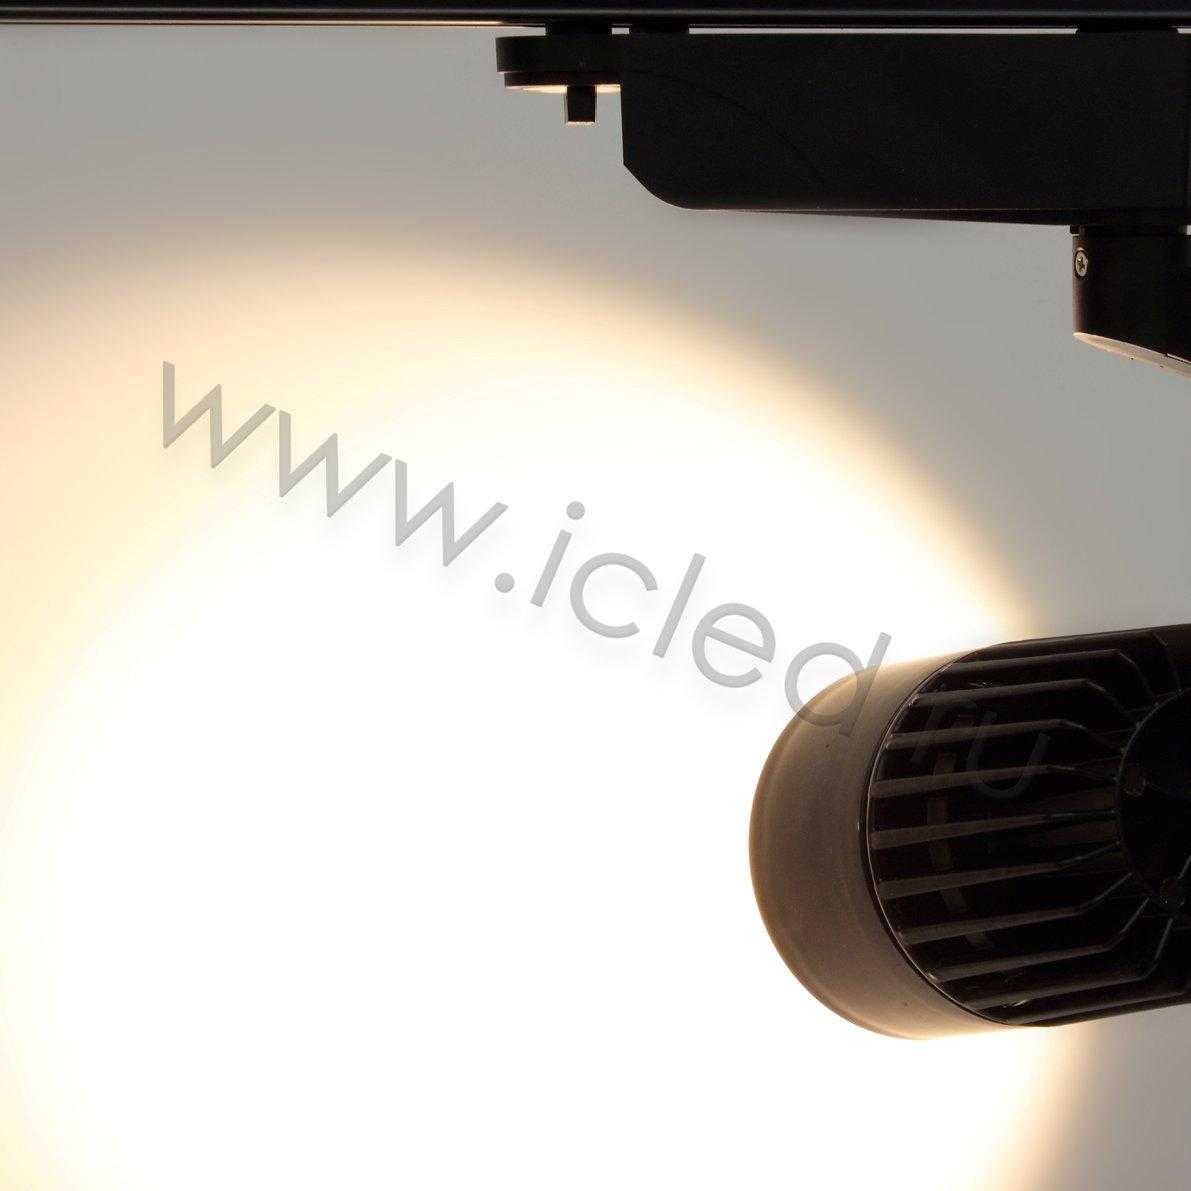 Светодиодный светильник трековый GDD-147 3L 3X22 (20W, warm white)